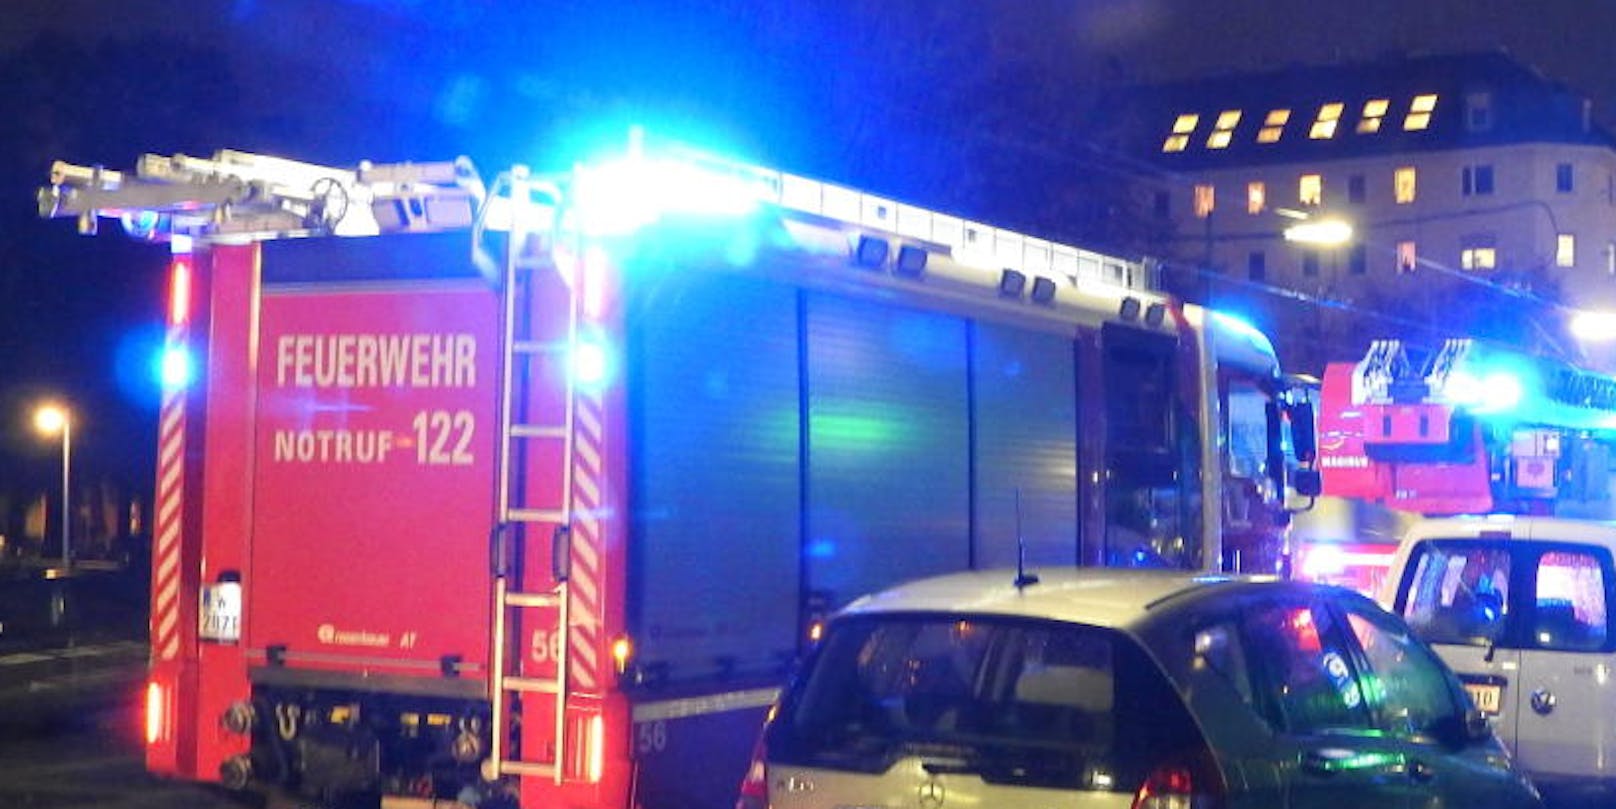 Feuerwehr-Einsatz in Wien. Symbolfoto